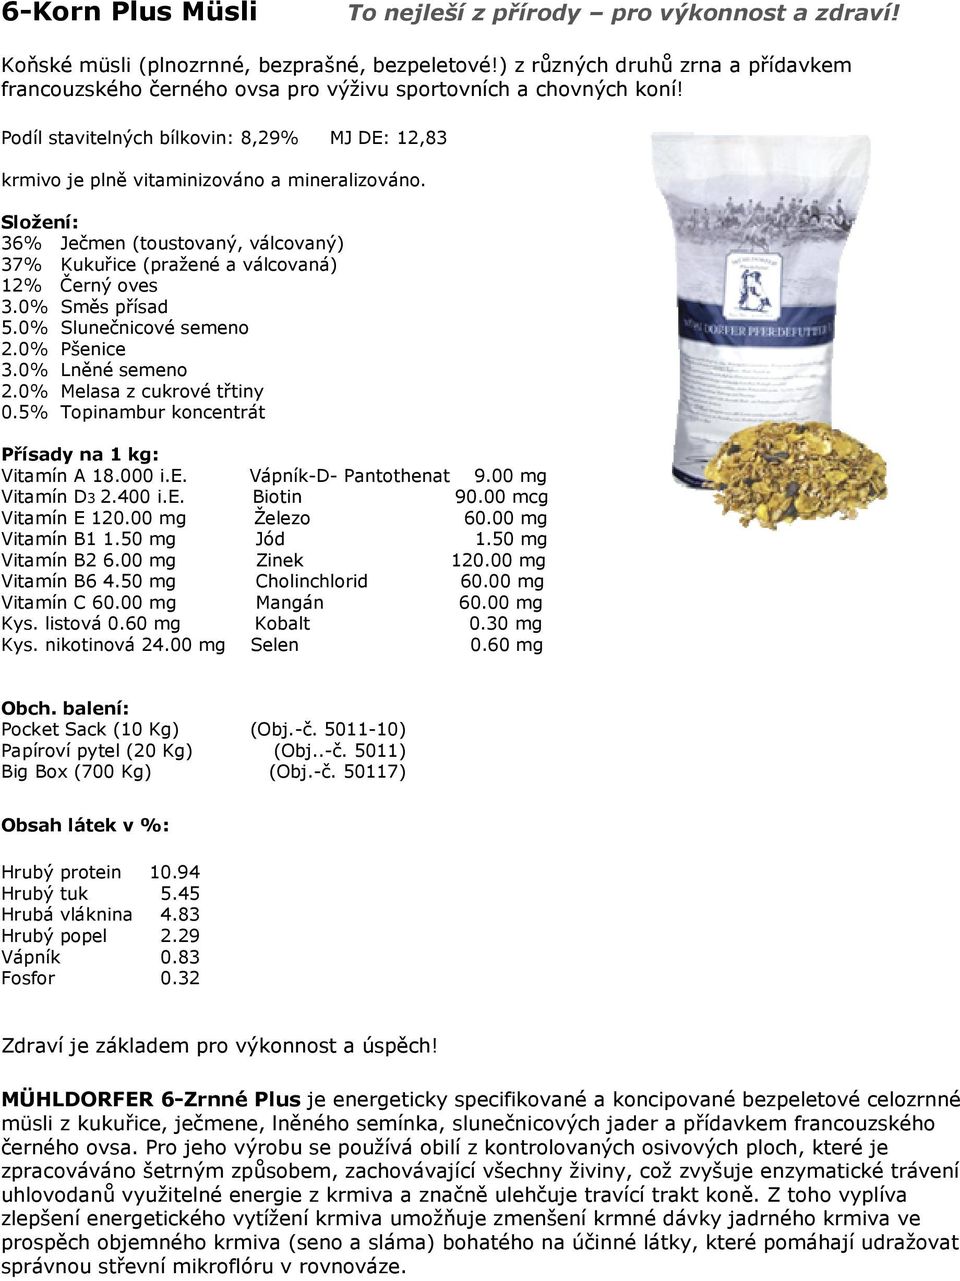 Podíl stavitelných bílkovin: 8,29% MJ DE: 12,83 krmivo je plně vitaminizováno váno a mineralizováno. 36% Ječmen (toustovaný, válcovaný) 37% Kukuřice (pražené a válcovaná) 12% Černý oves 3.